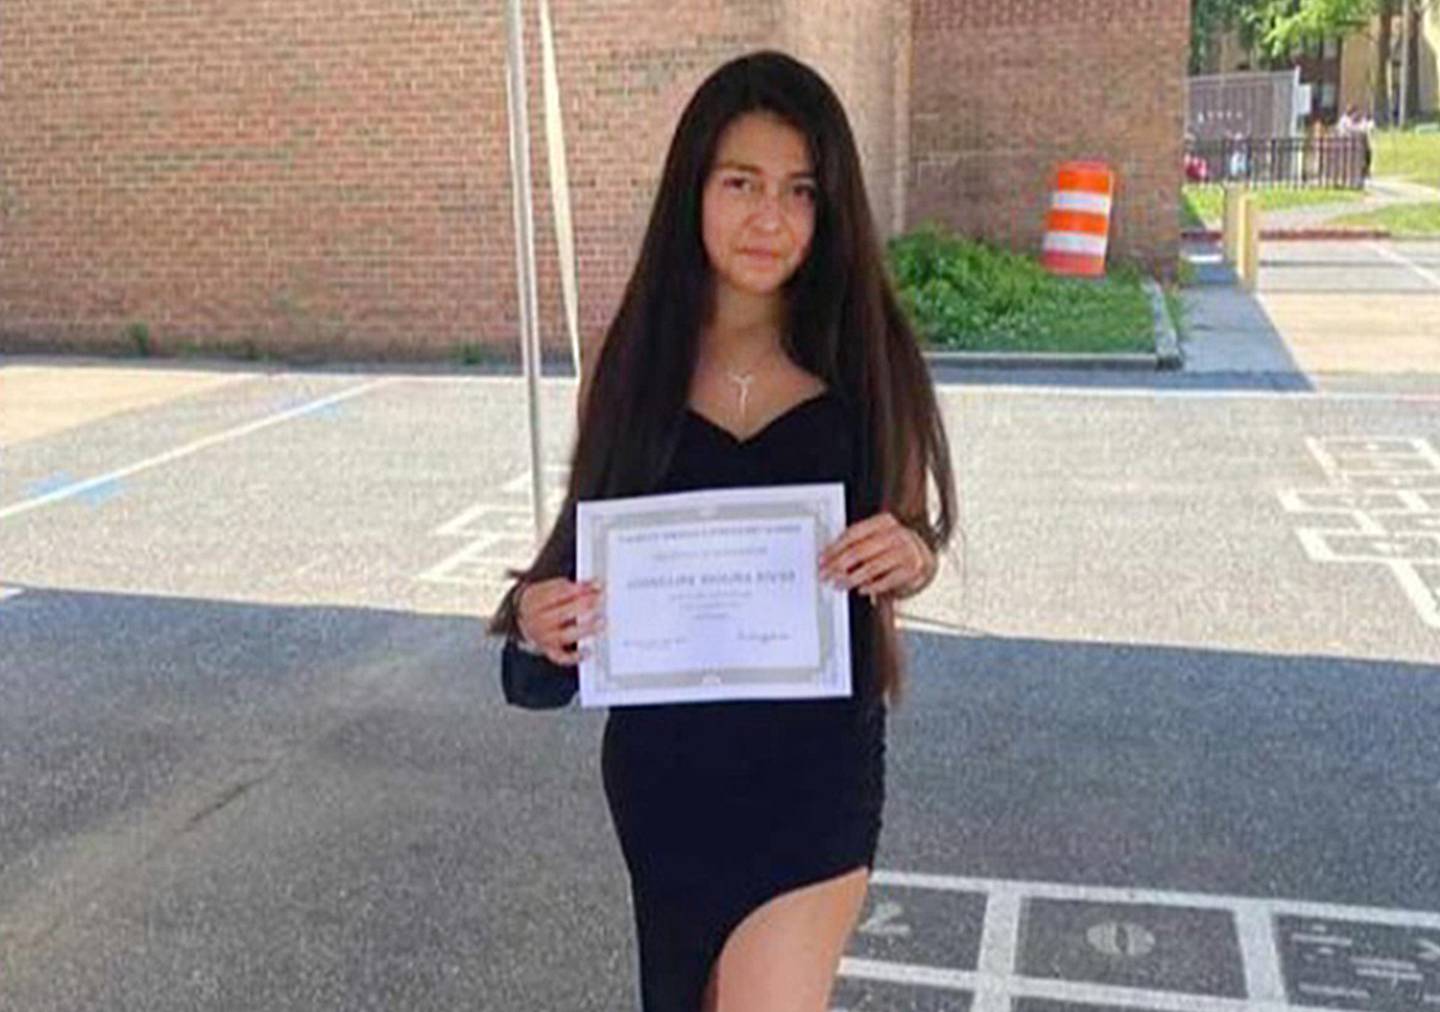 Josselina Maritza Molina Rivas holds her diploma.